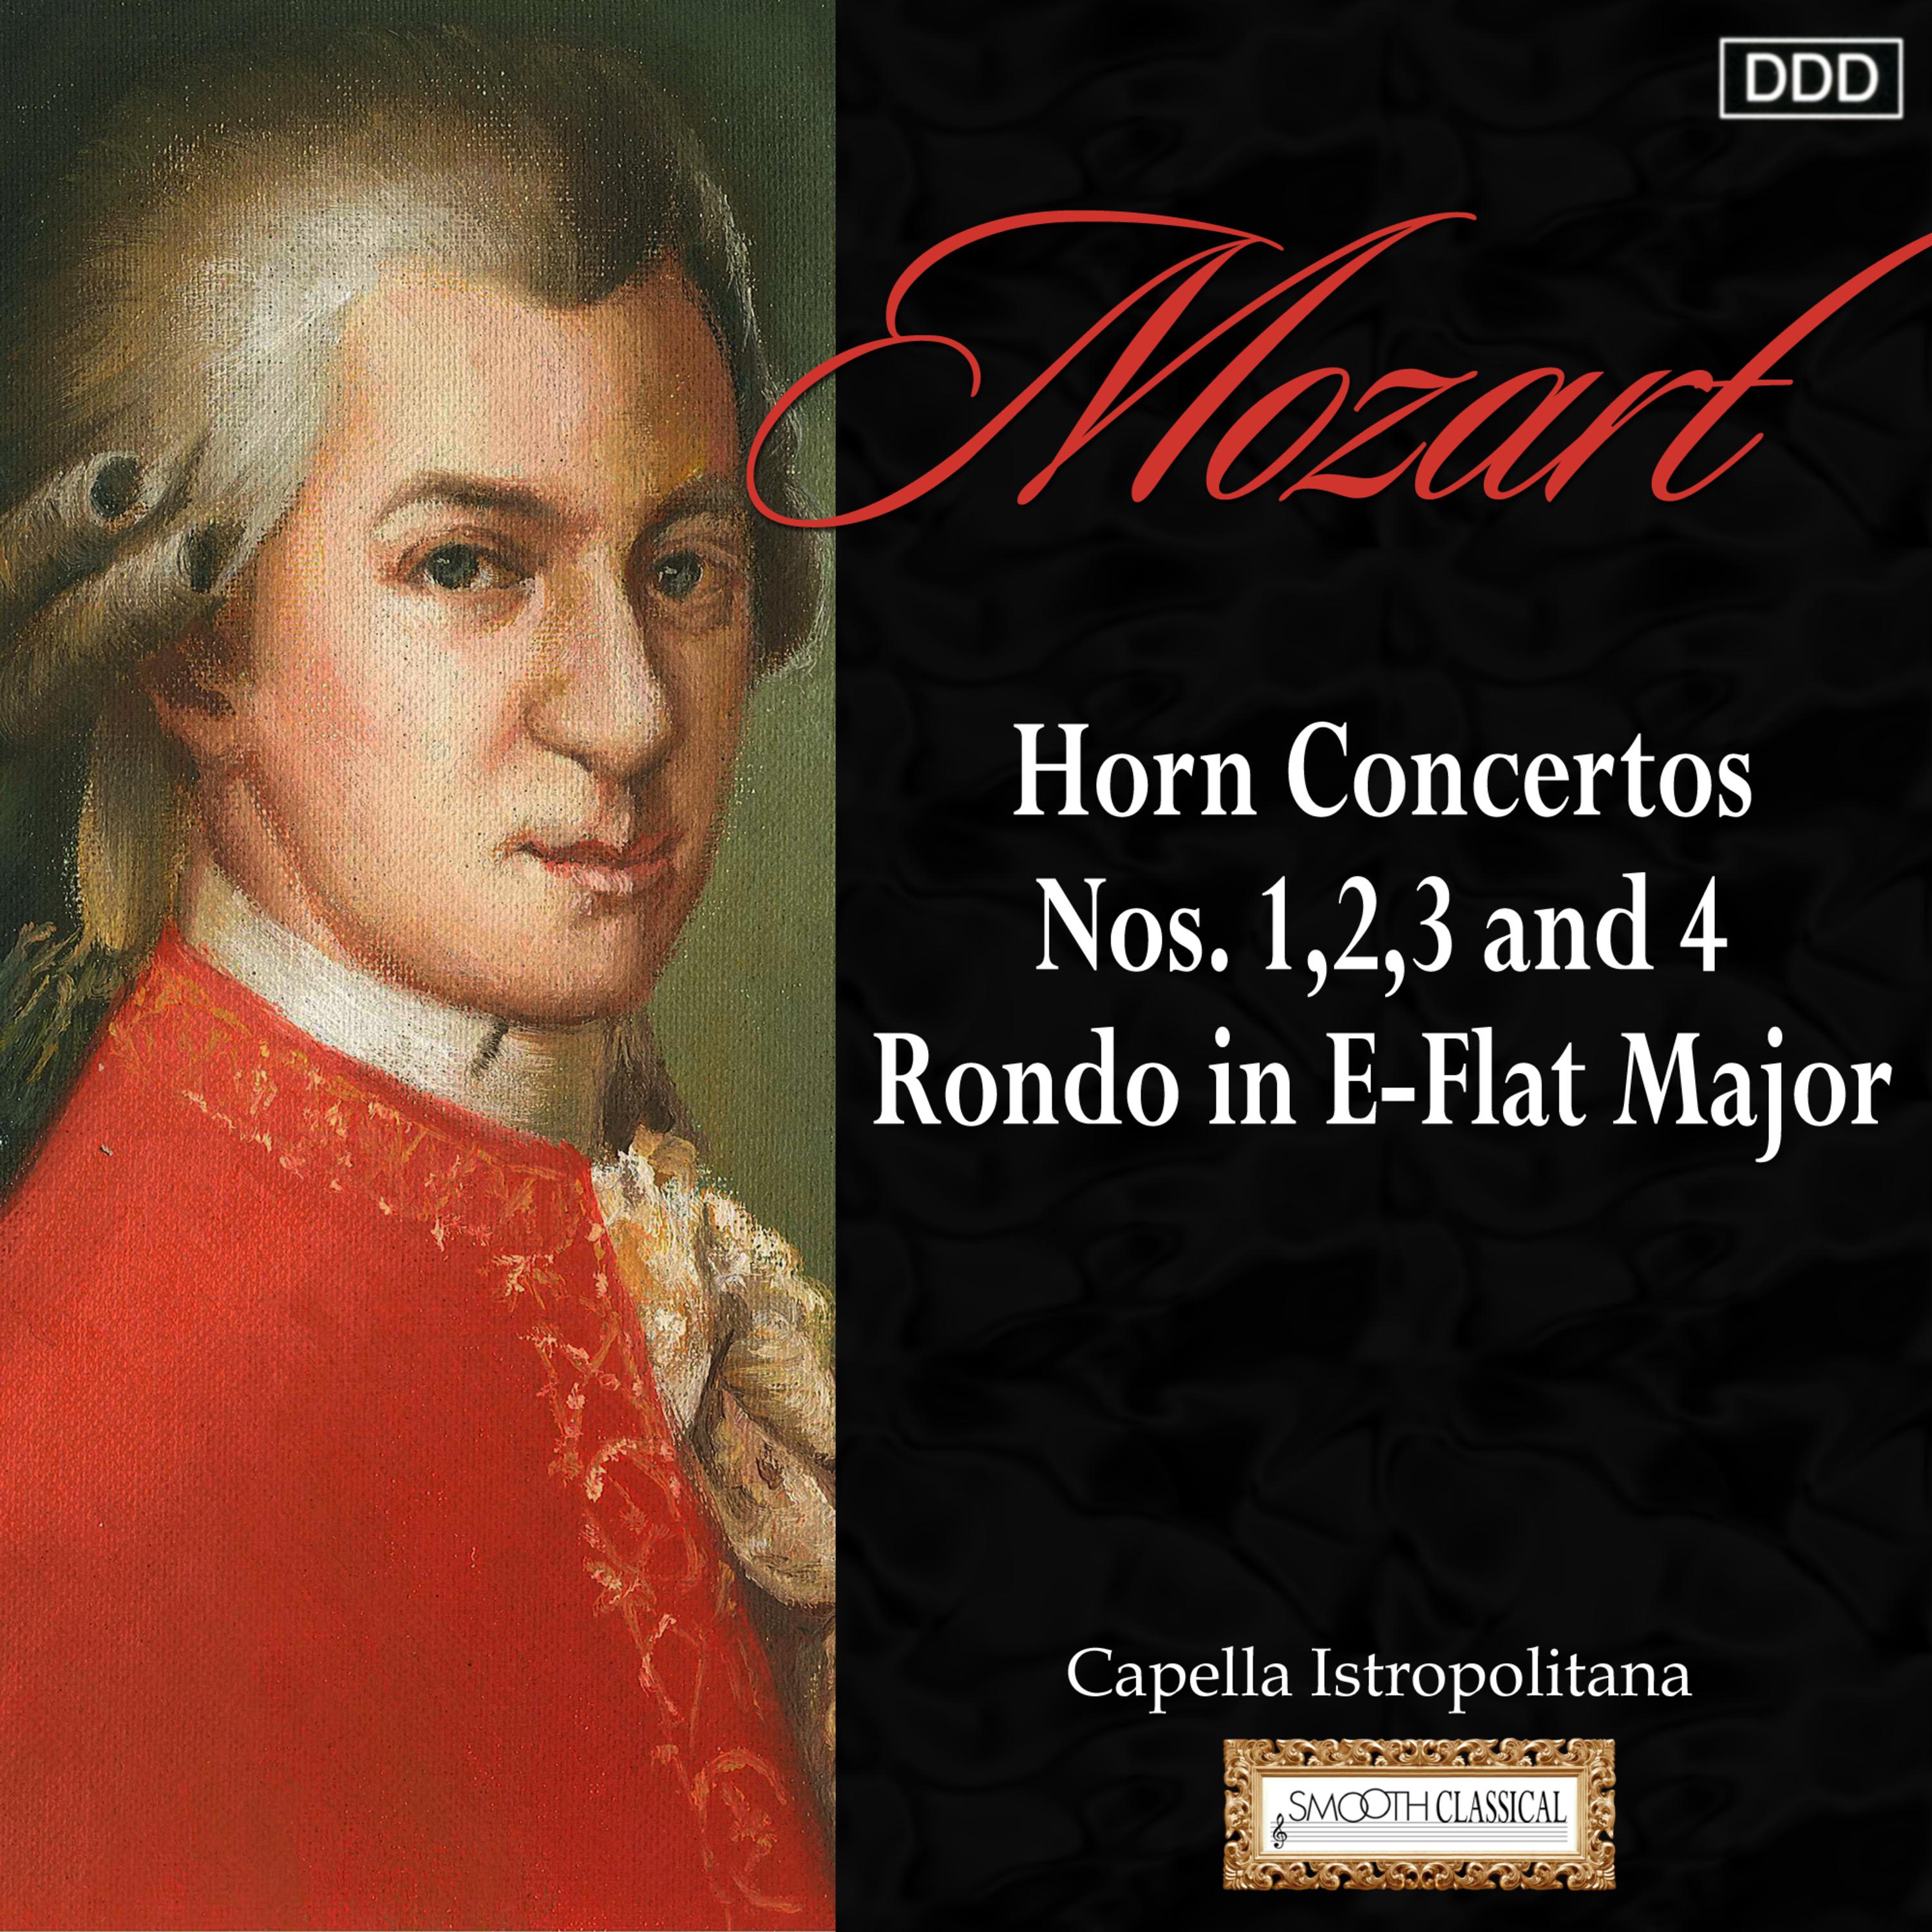 Horn Concerto No. 4 in E-Flat Major, K. 495: III. Rondo: Allegro vivace